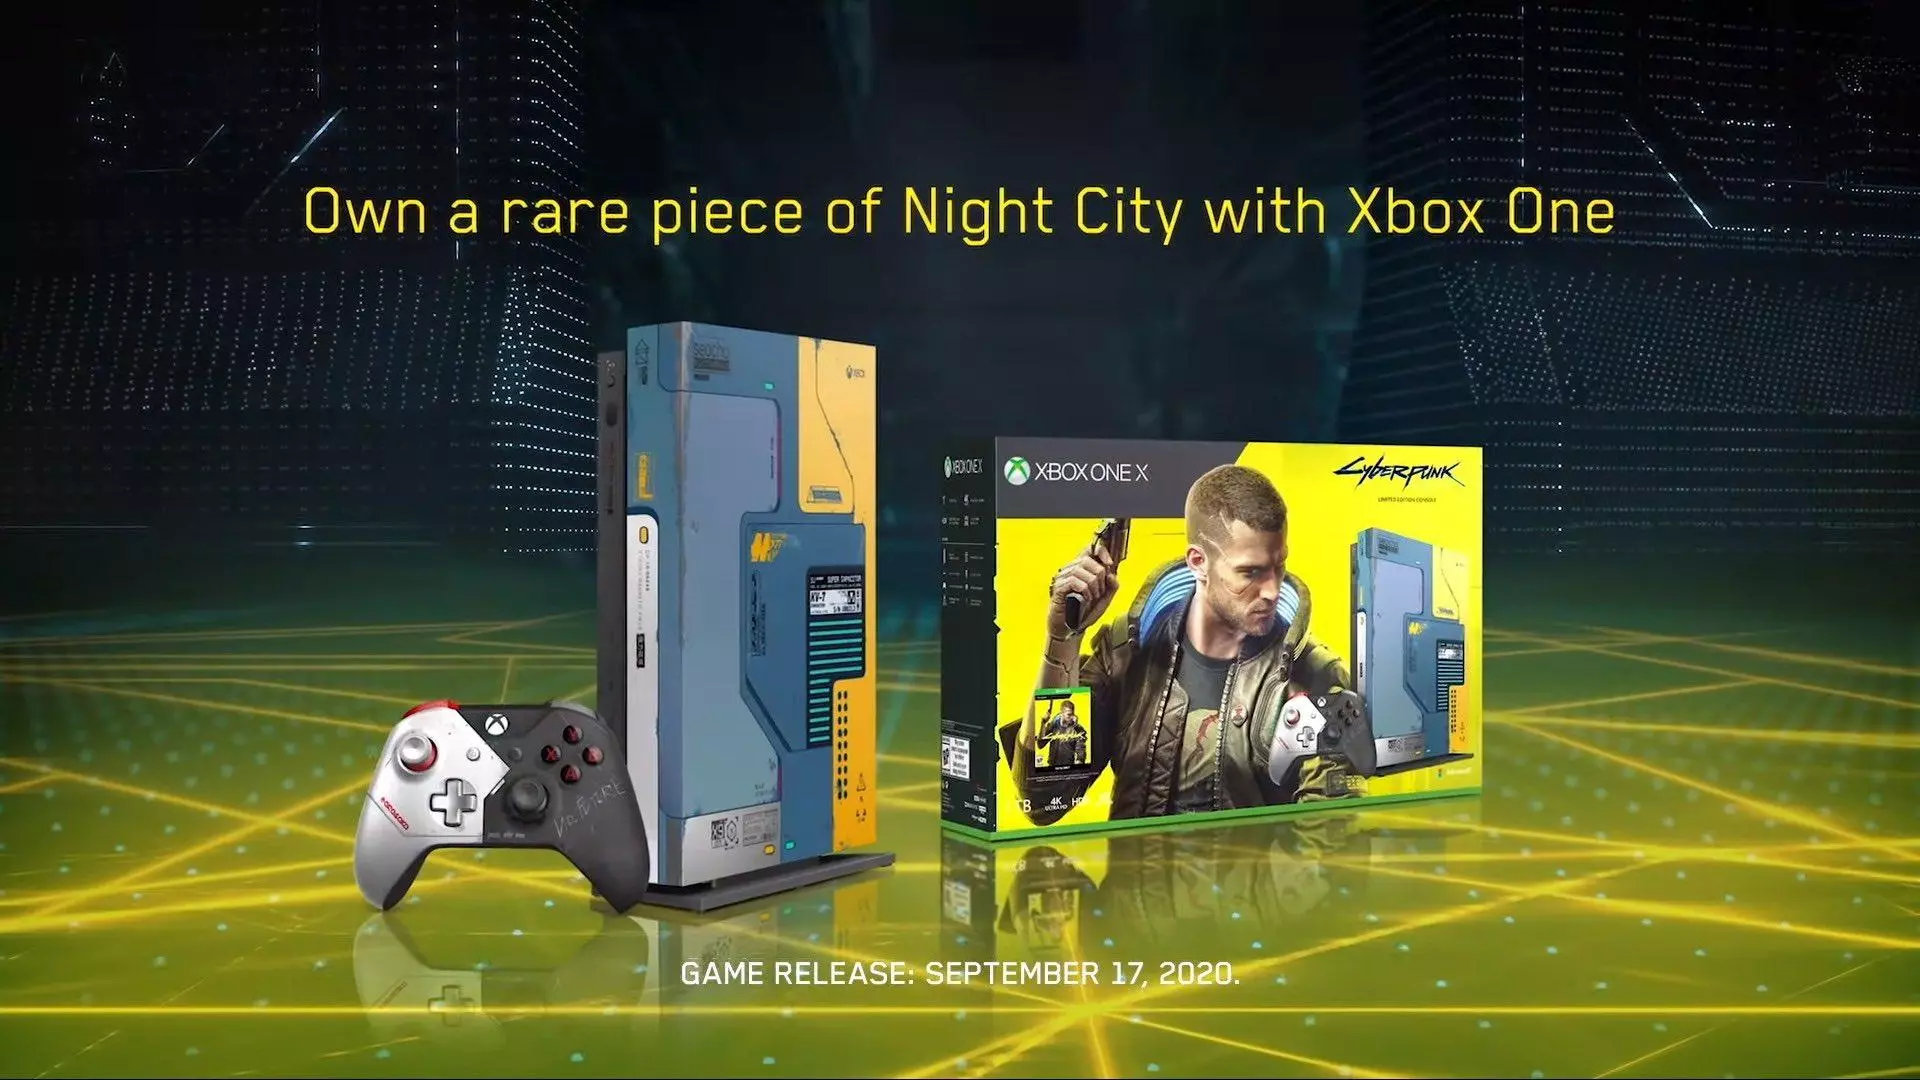 Cyberpunk 2077 Xbox One X Bundle, предлагает "редкий кусочек ночного города" в своем индивидуальном дизайне, вдохновленном грядущей RPG от CD Projekt RED.